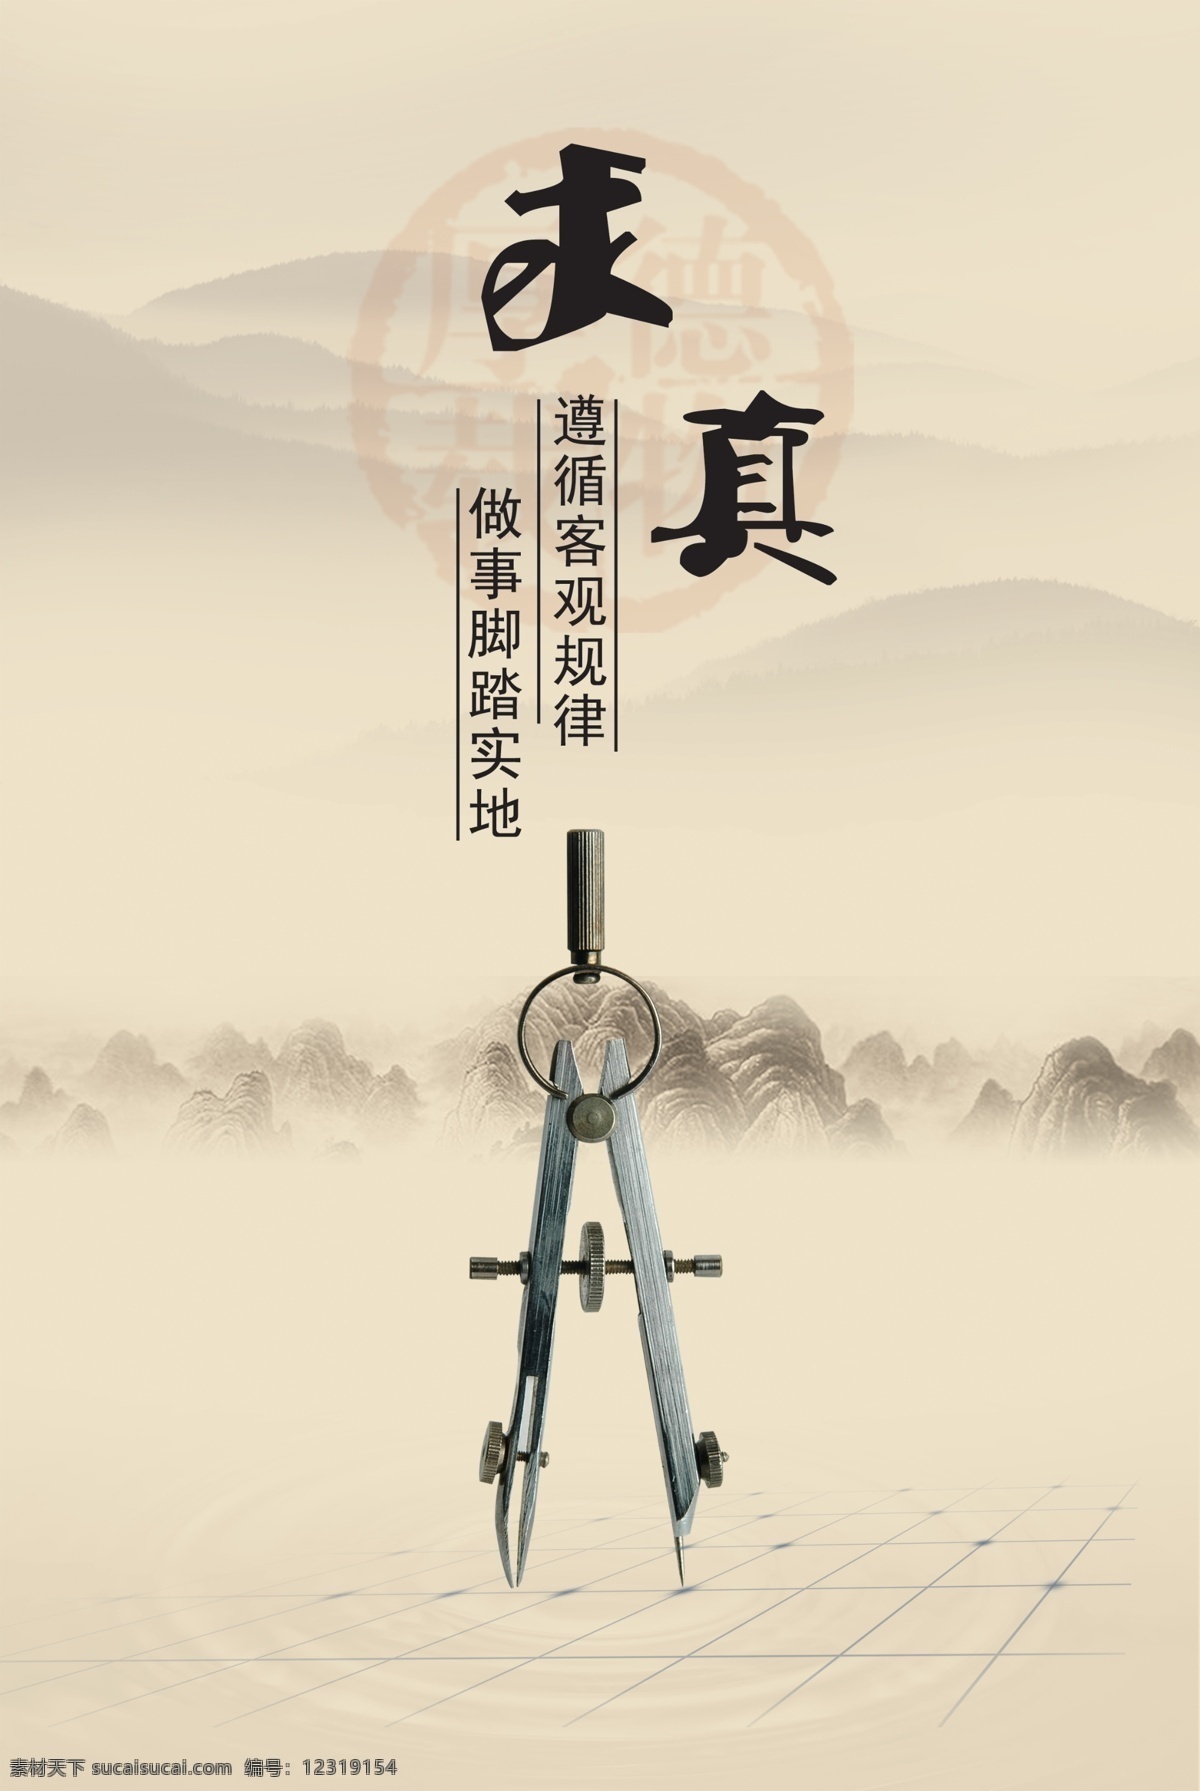 新一代 中国 风 展板 挂画 圆规 中国风 其他展板设计